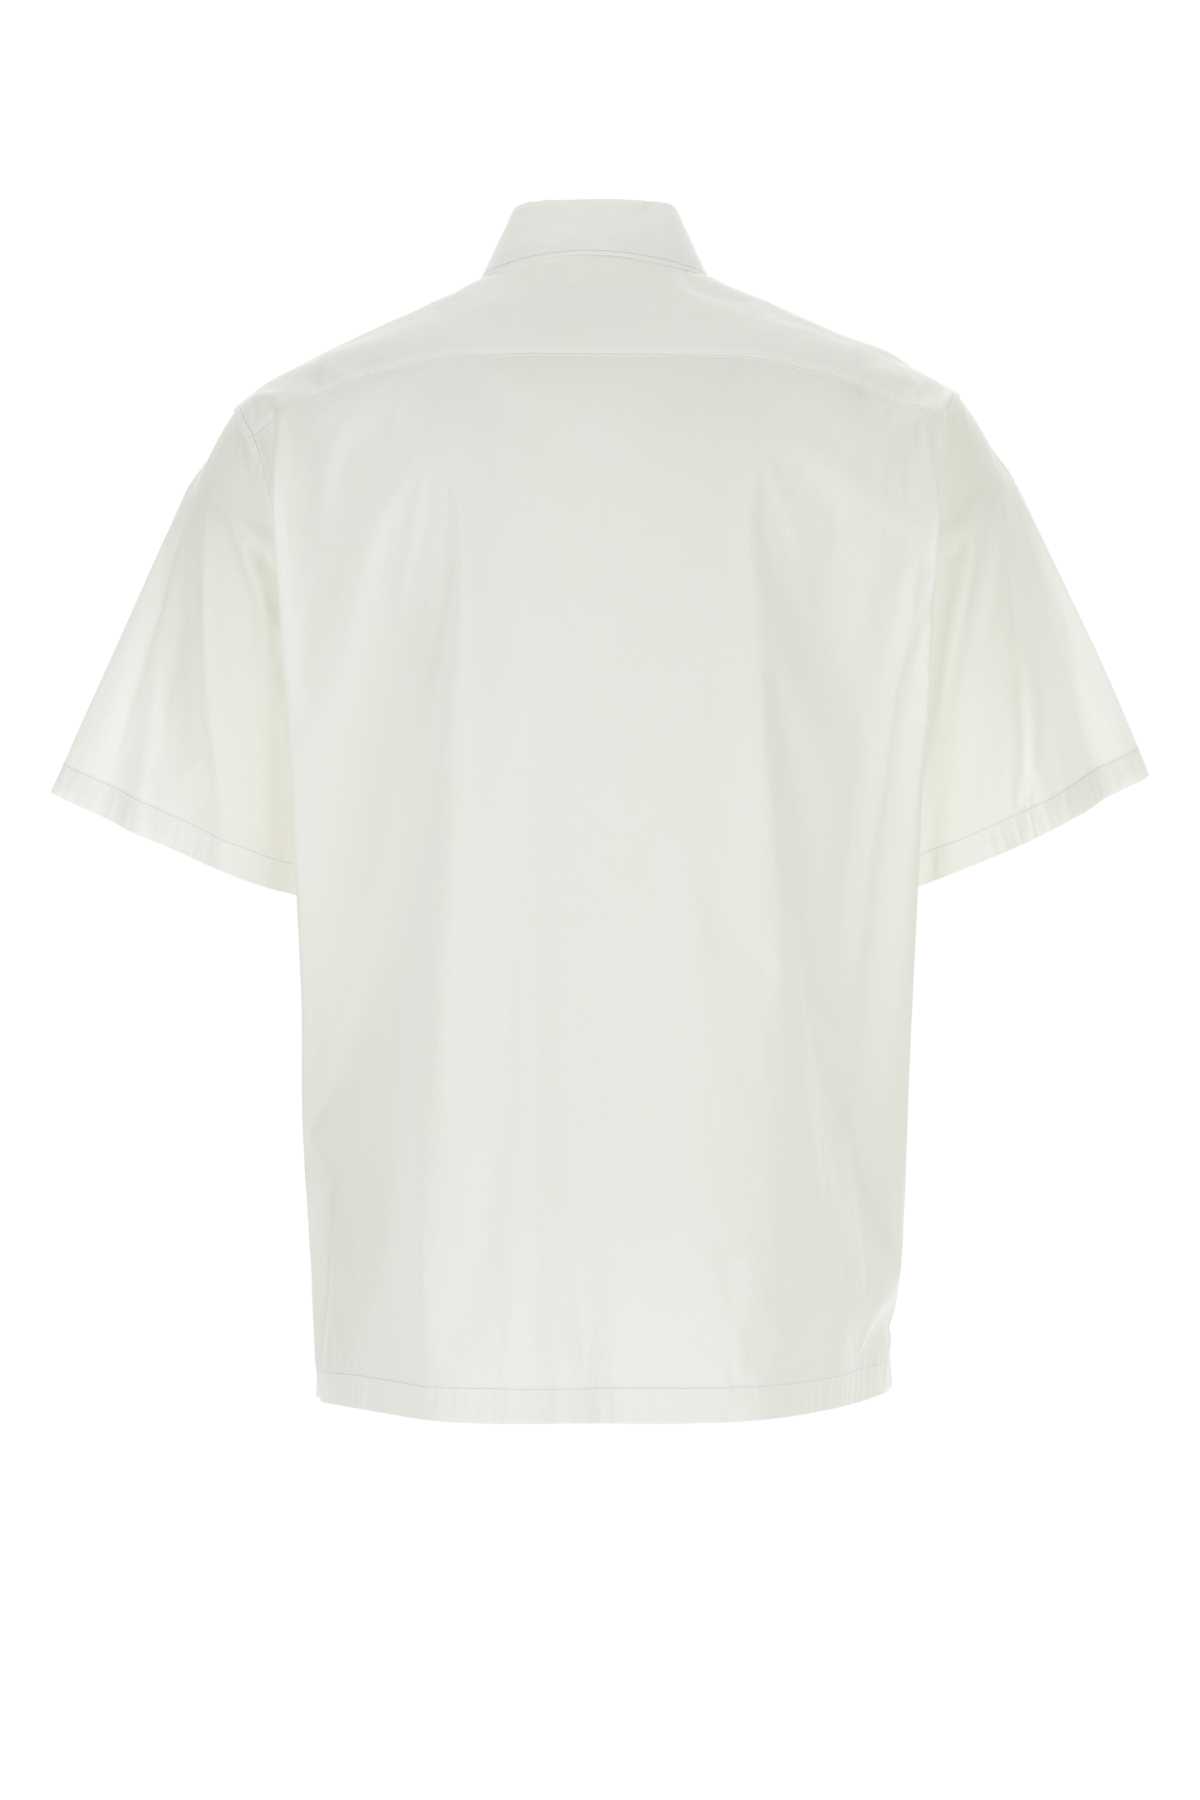 Prada White Stretch Poplin Shirt In Bianco